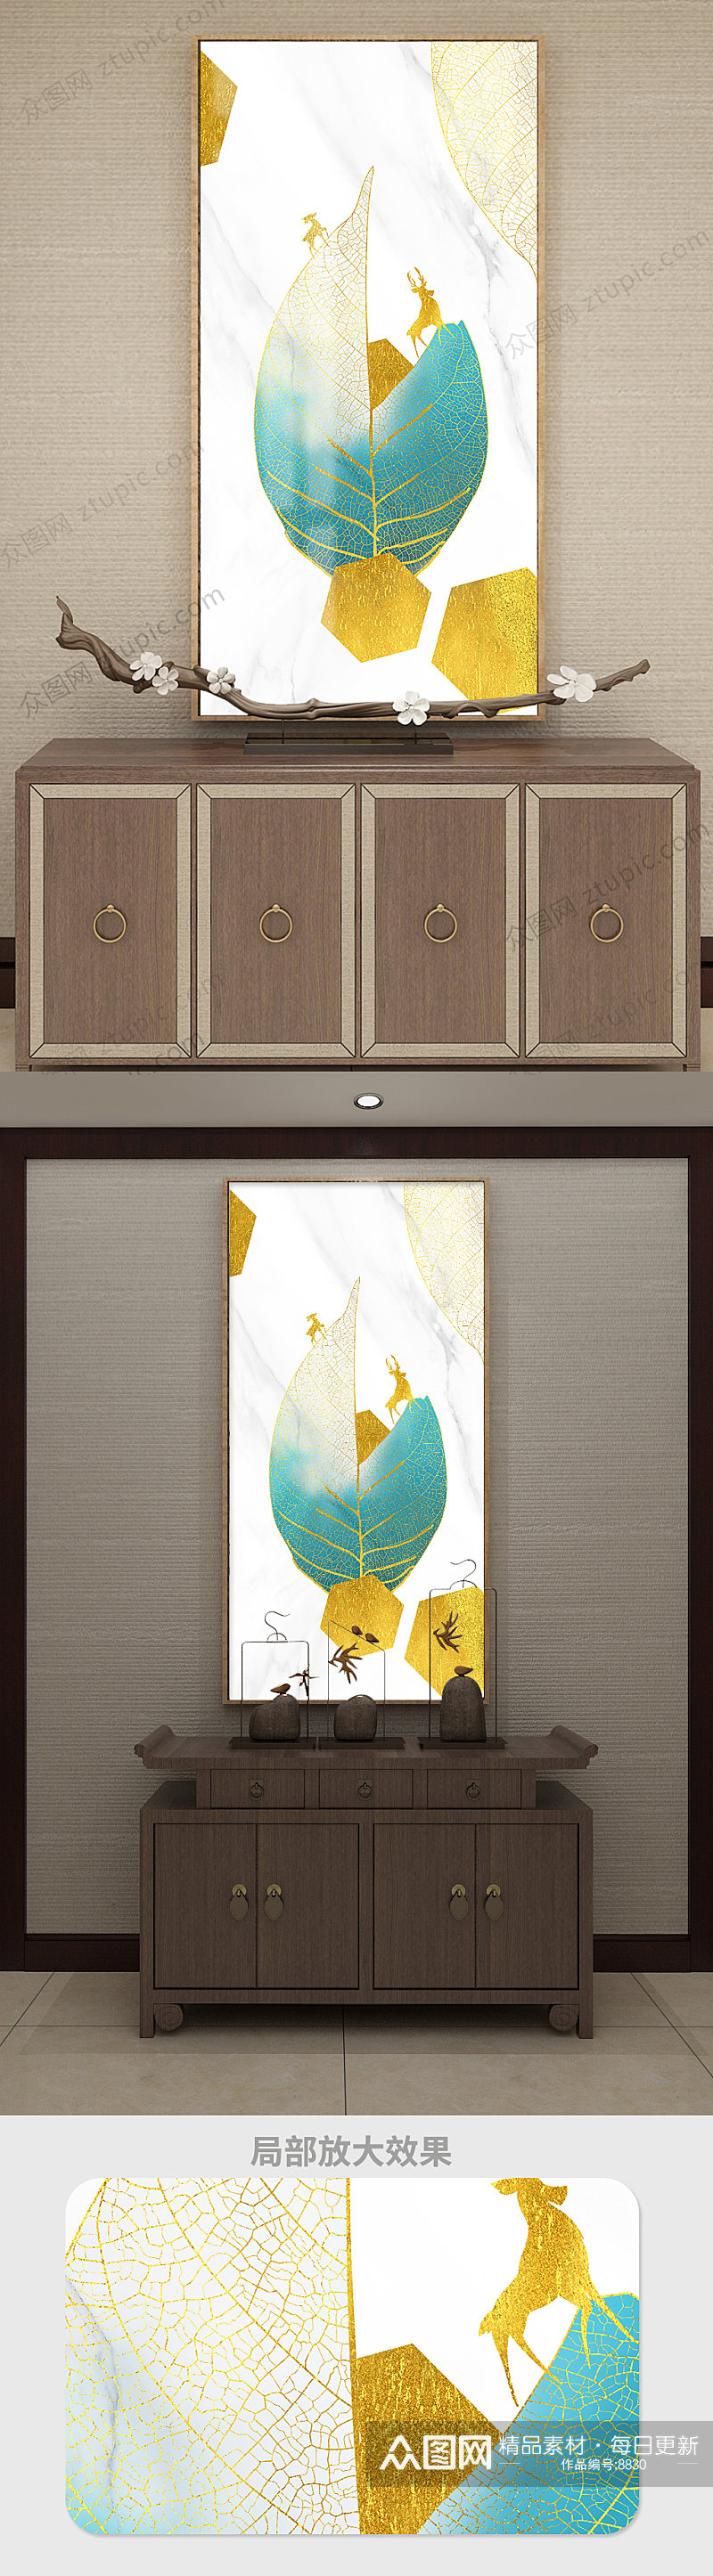 新中式麋鹿抽象手绘创意叶子装饰画素材